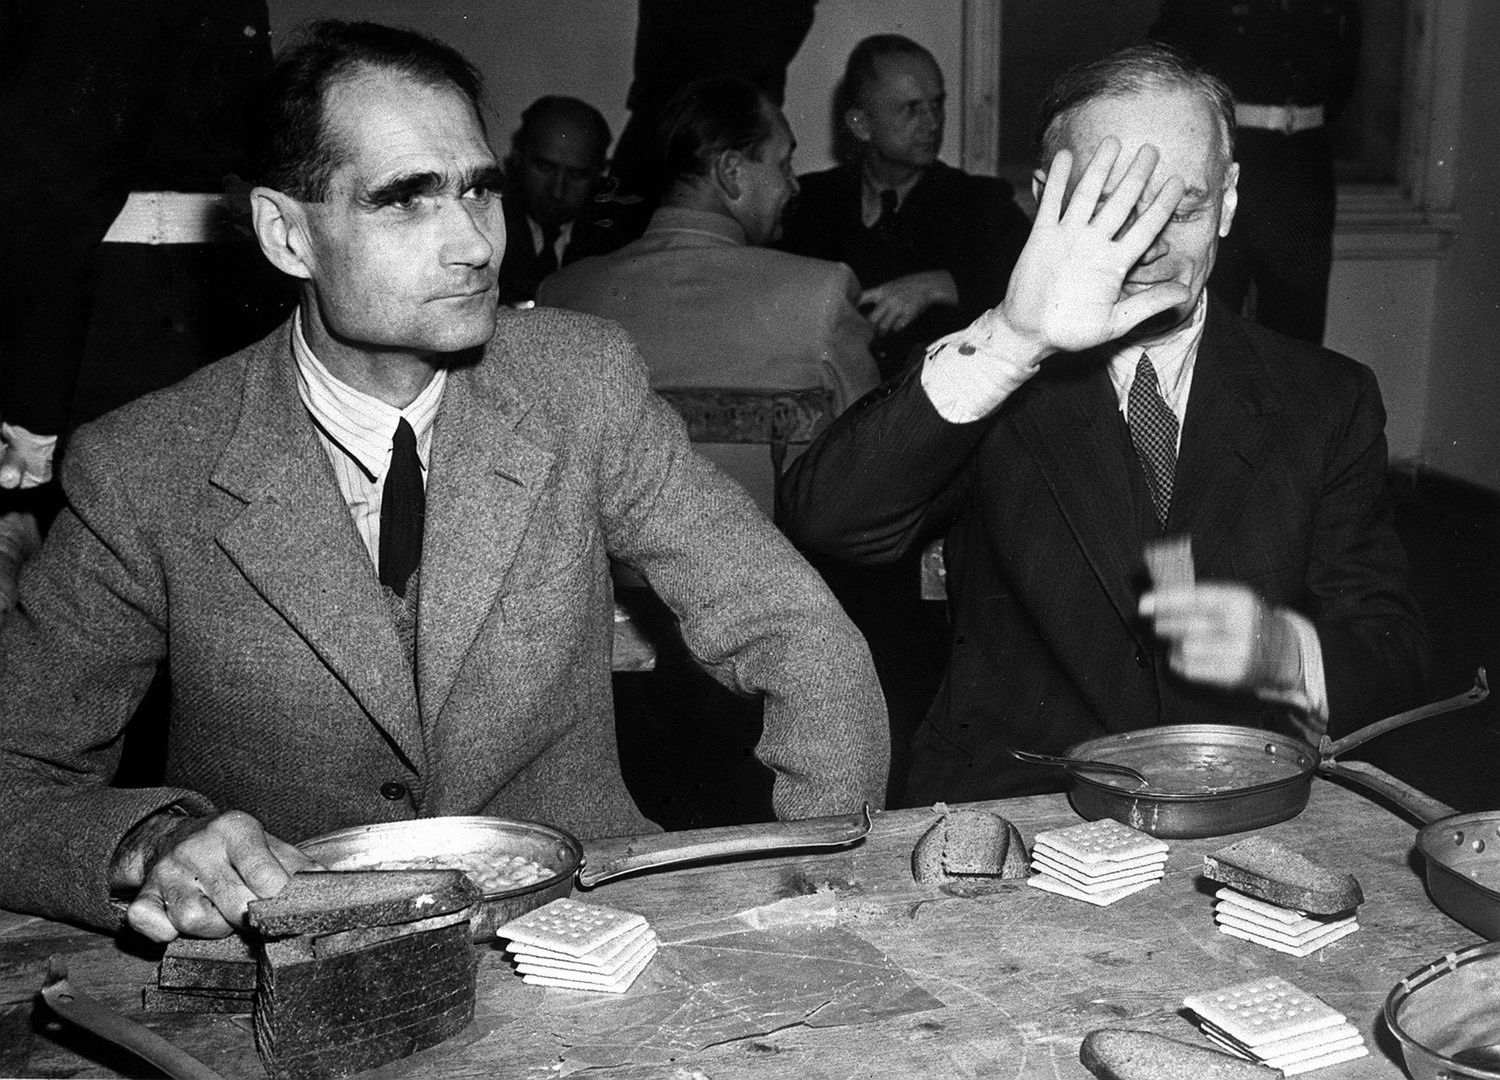 Личный секретарь, заместитель Адольфа Гитлера по нацистской партии Рудольф Гесс и министр иностранных дел Германии Иоахим фон Риббентроп (слева направо) во время обеденного перерыва на Нюрнбергском процессе 20 ноября 1945 года